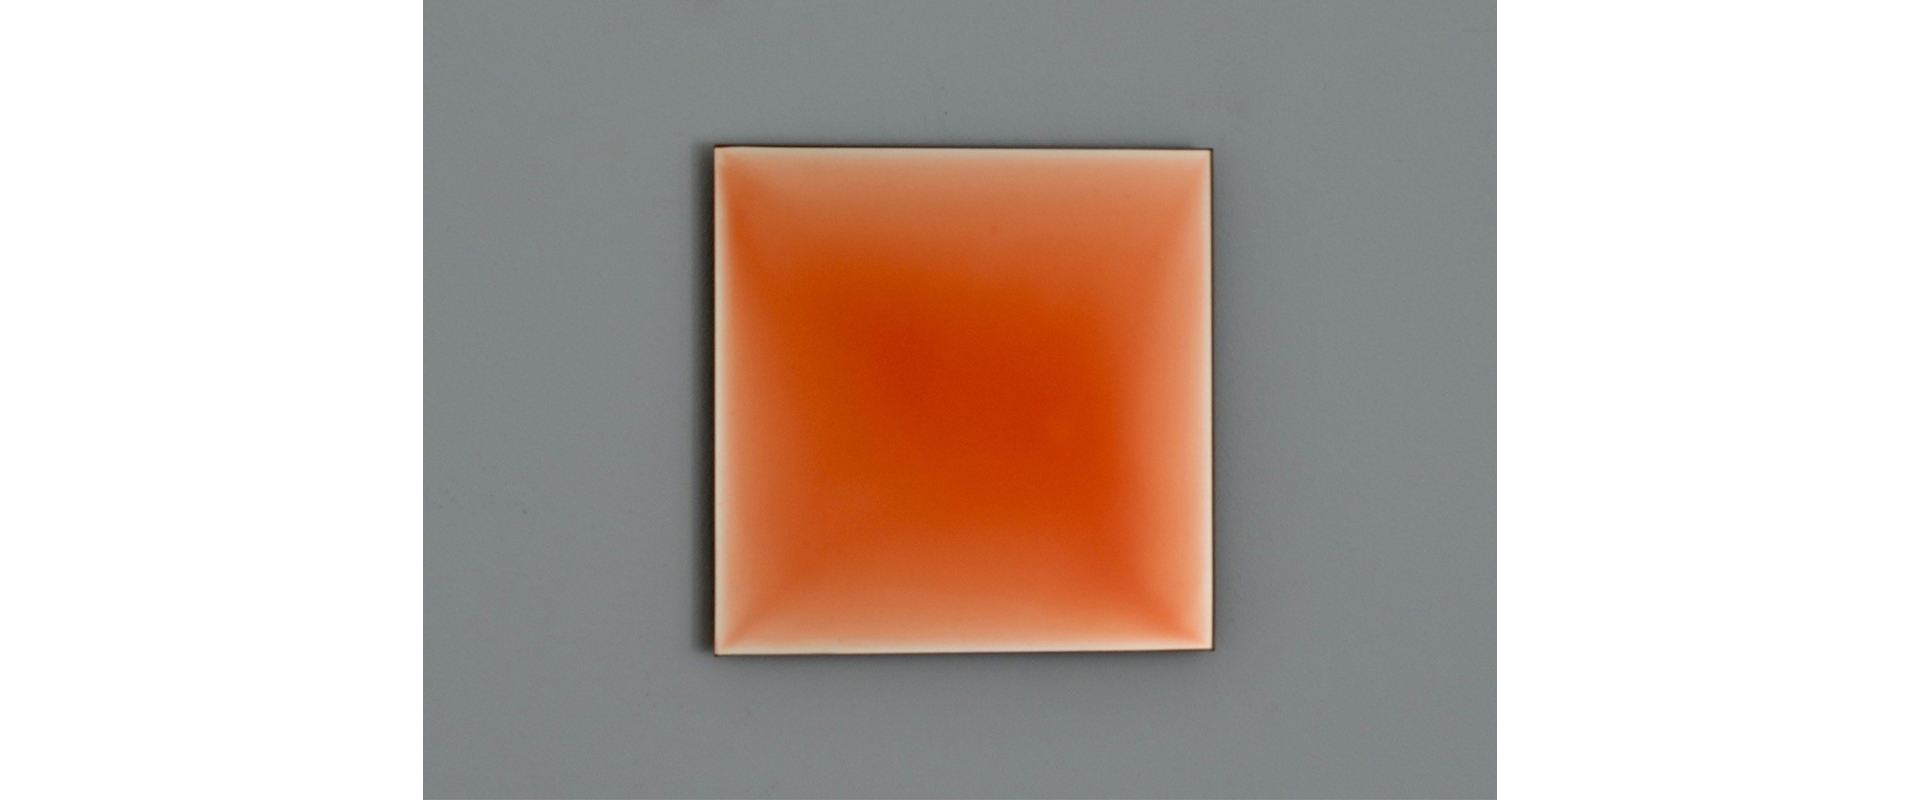 EVERGLOW 010 HO-K - 2021, Pigment, Lack auf vespiegeltem Glas, 15 x 15 cm